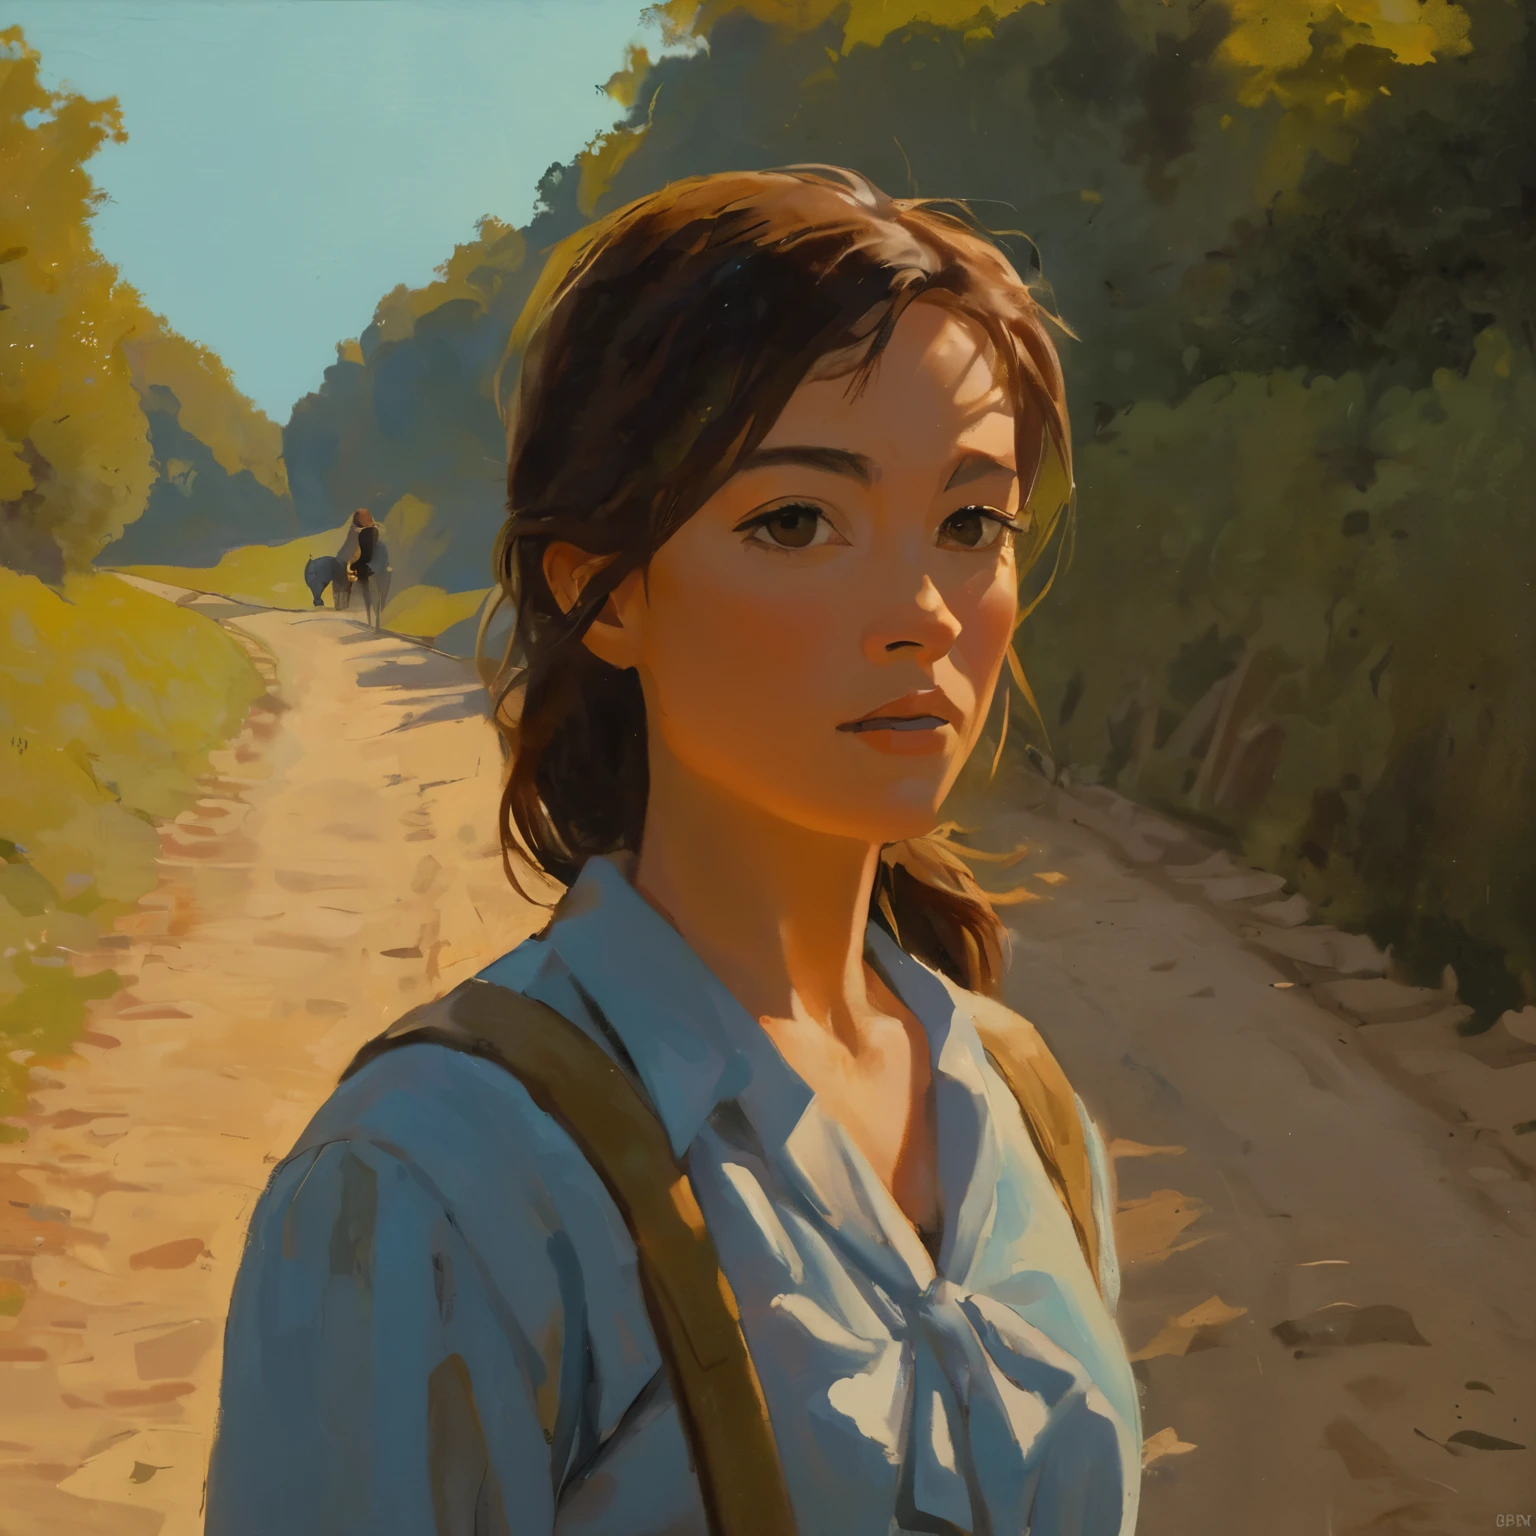 cinematográfico, Un retrato de cerca de una mujer joven caminando sobre una colina con una hermosa luz y escena, pintura maestra, mitaka asa pelo largo de cola de caballo sin ropa